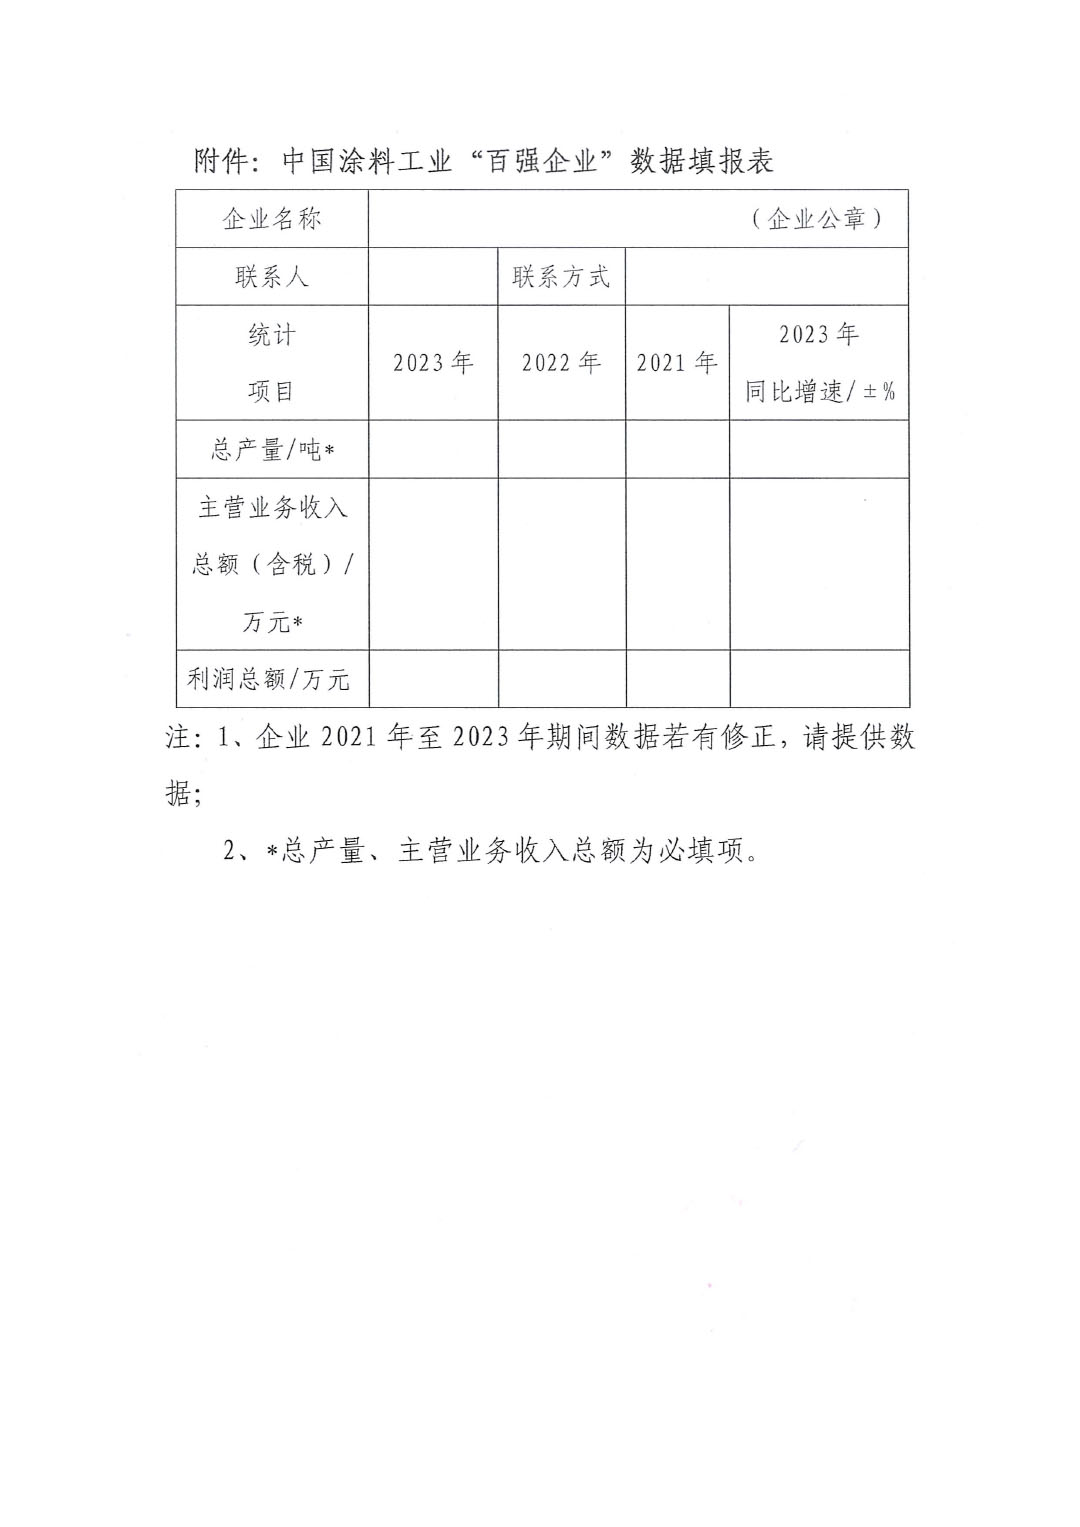 关于2023年度中国涂料工业“百强企业”调研工作的通知(2)(1)-3